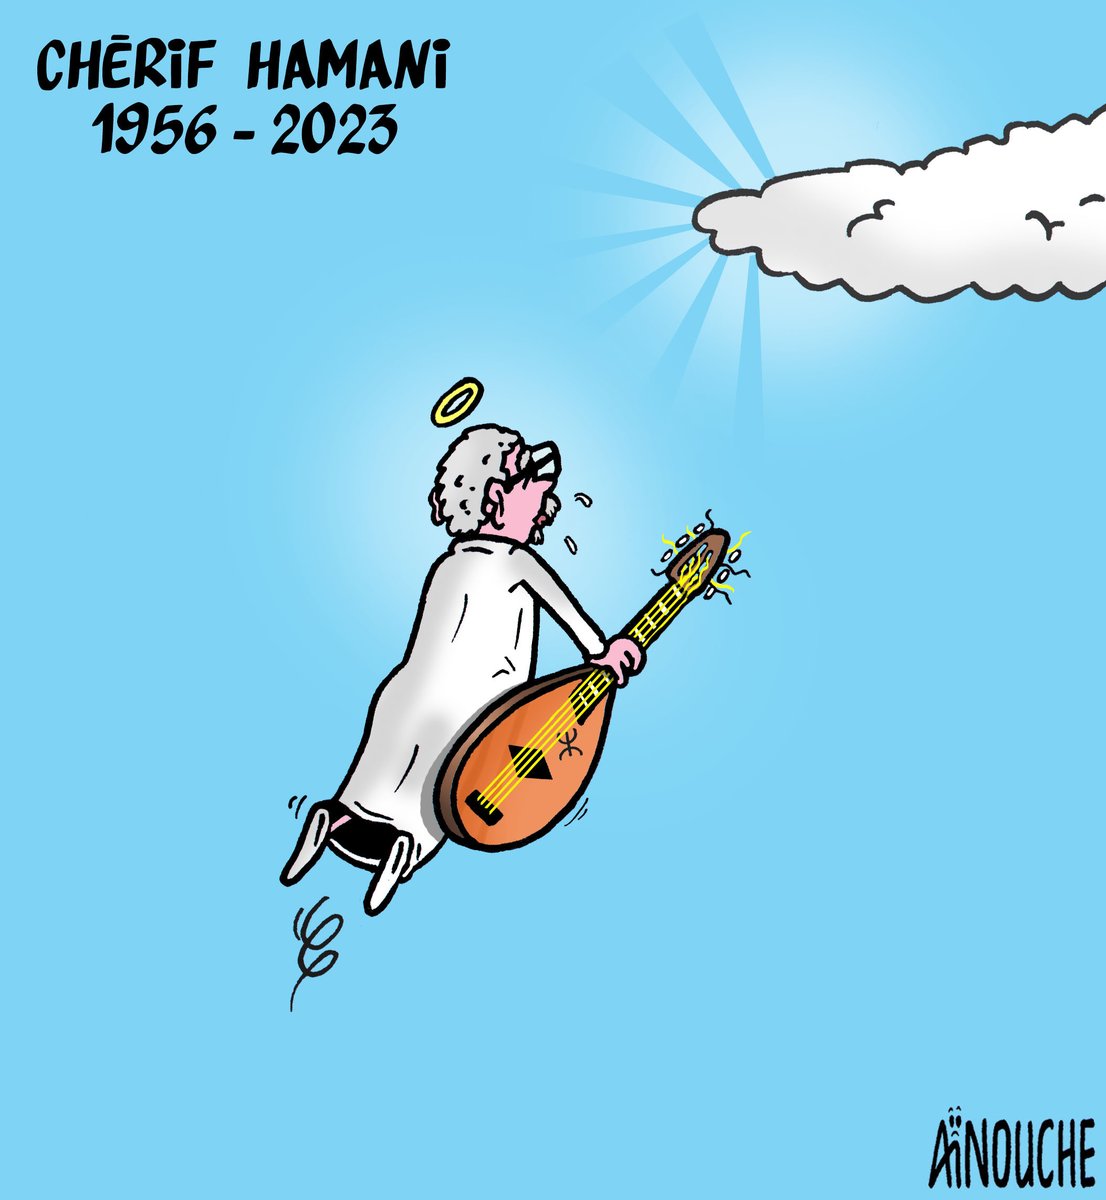 C'est avec une grande tristesse que j'ai appris la disparition de Chérif Hamani. C'était un des plus grands chanteurs kabyles. Toutes mes sincères condoléances à sa famille, ses proches et tous ses fans. Repose en paix Dda Chérif ! #Cherif_Hamani #Kabylie #Algerie #Algeria